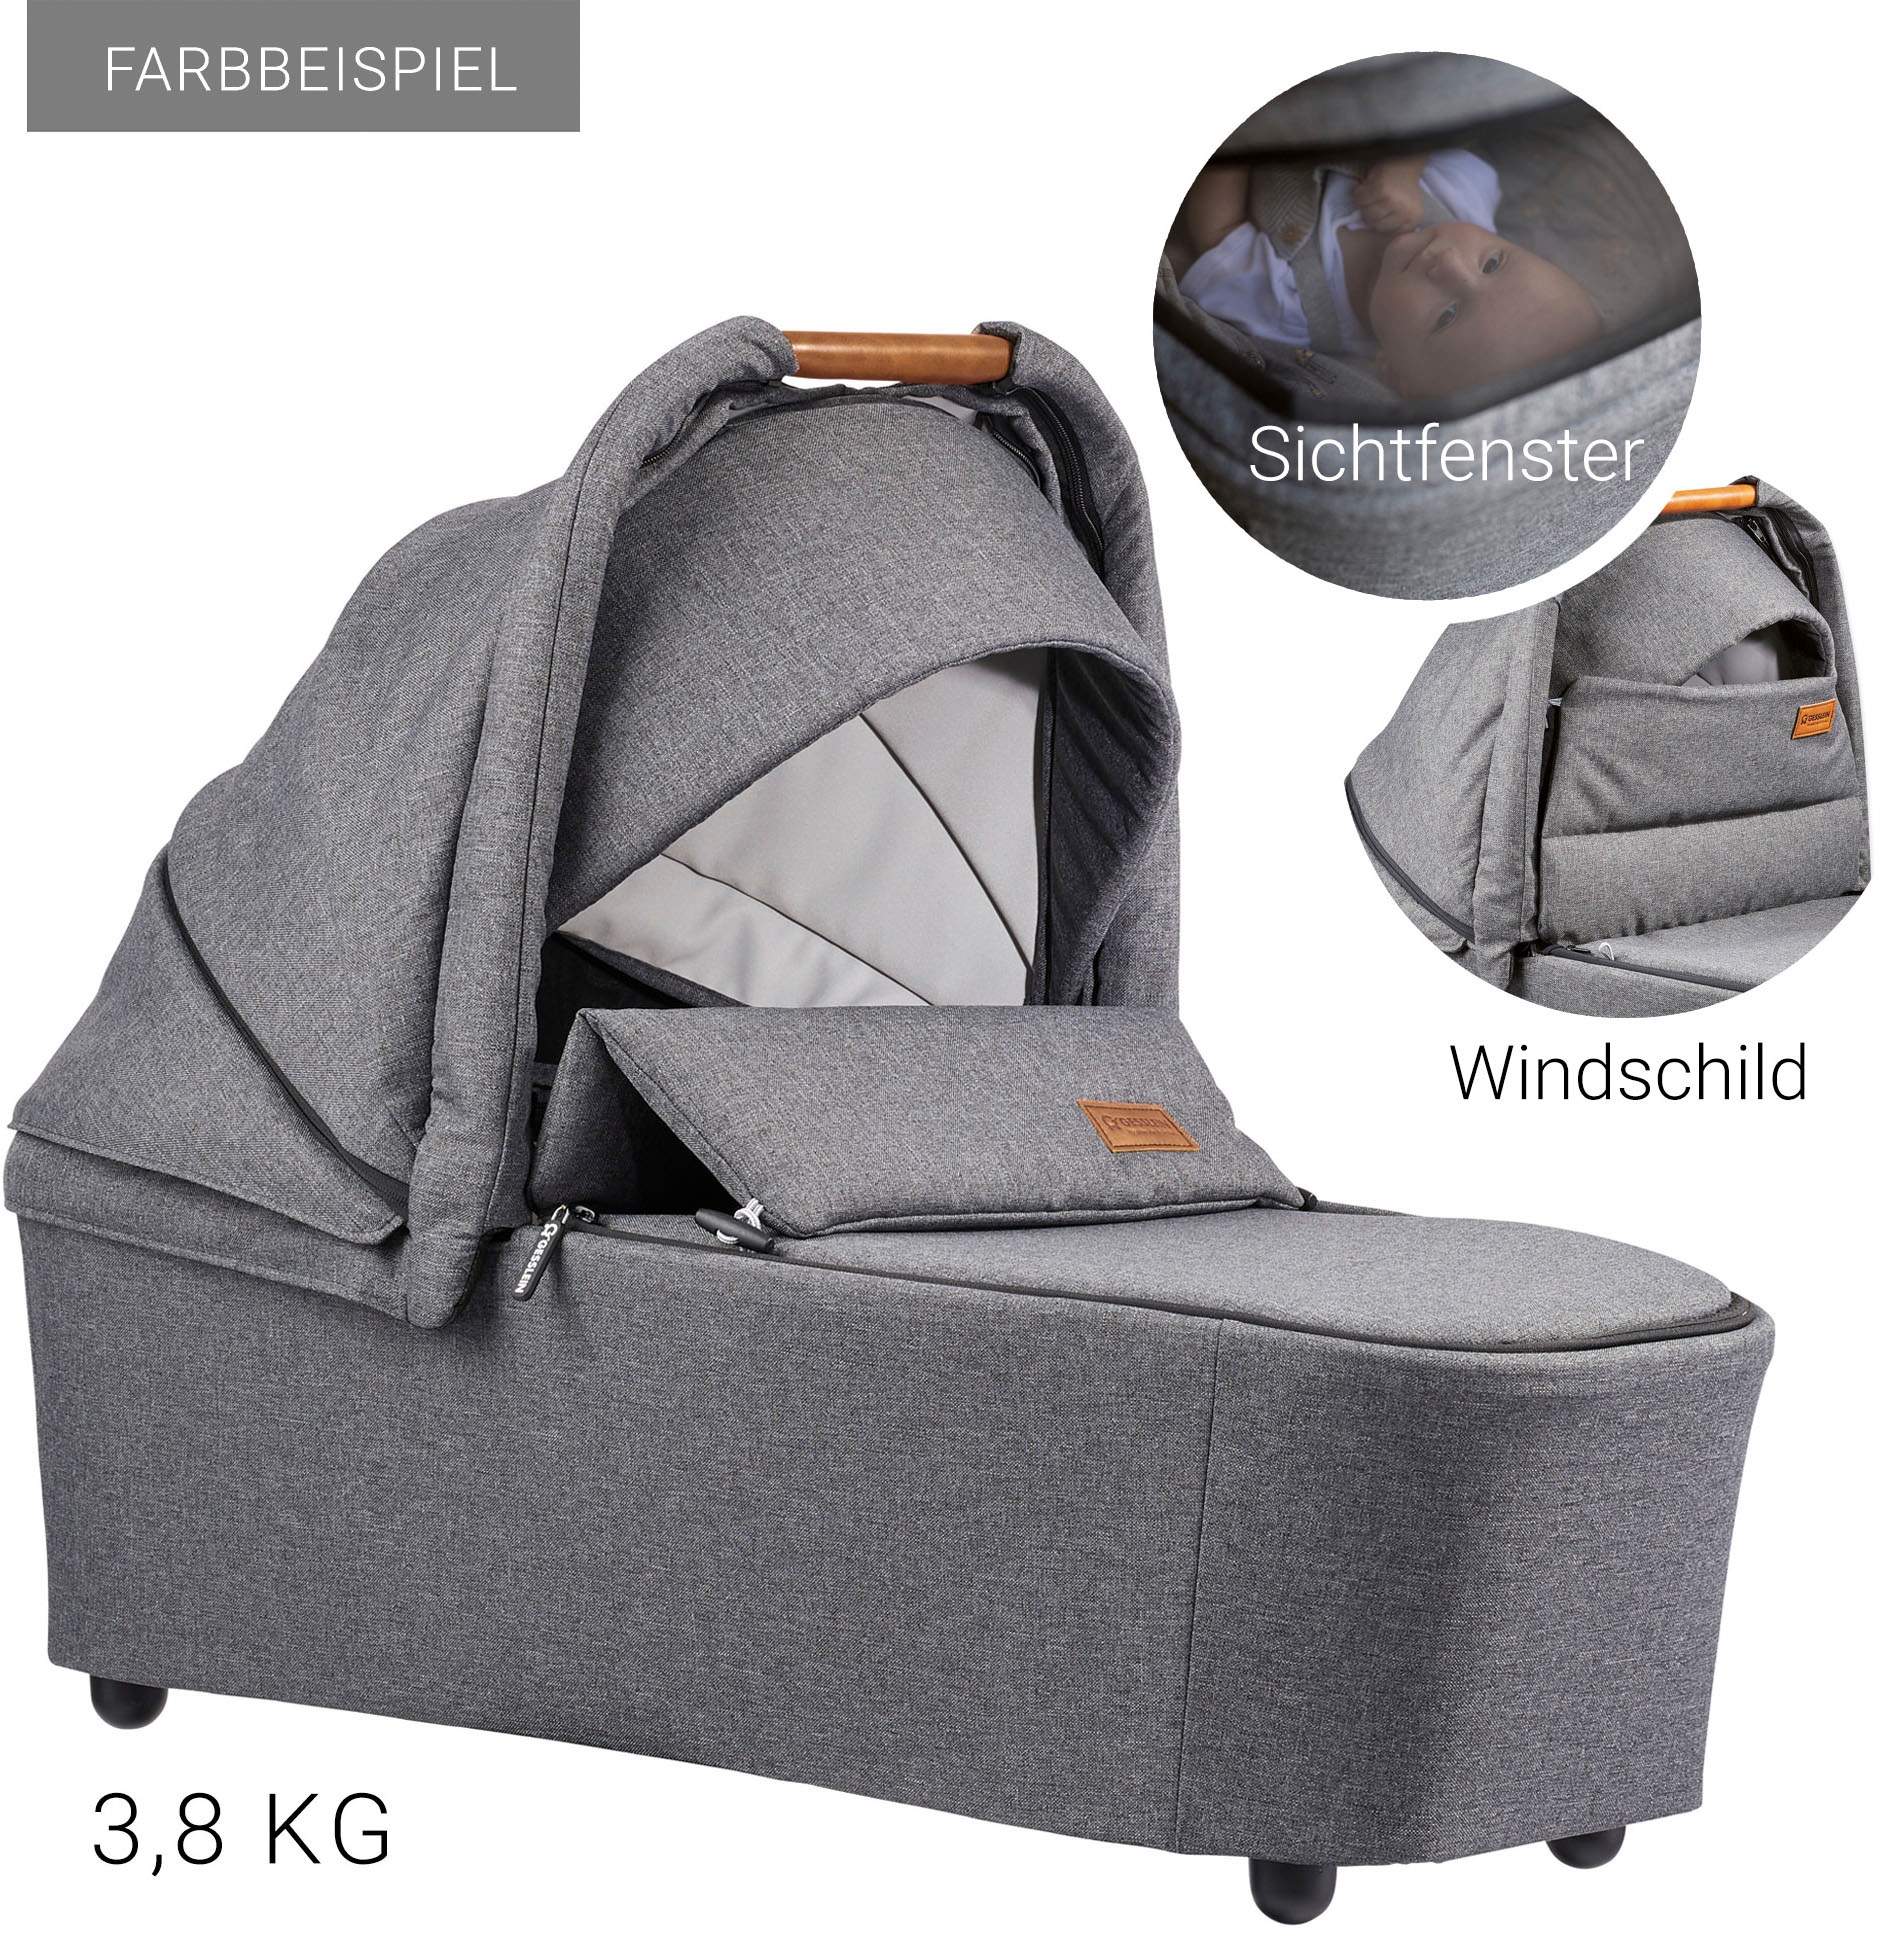 Gesslein Kombi-Kinderwagen »FX4 Soft+ mit Aufsatz Style, schwarz/cognac«, mit Babywanne C3 und Babyschalenadapter